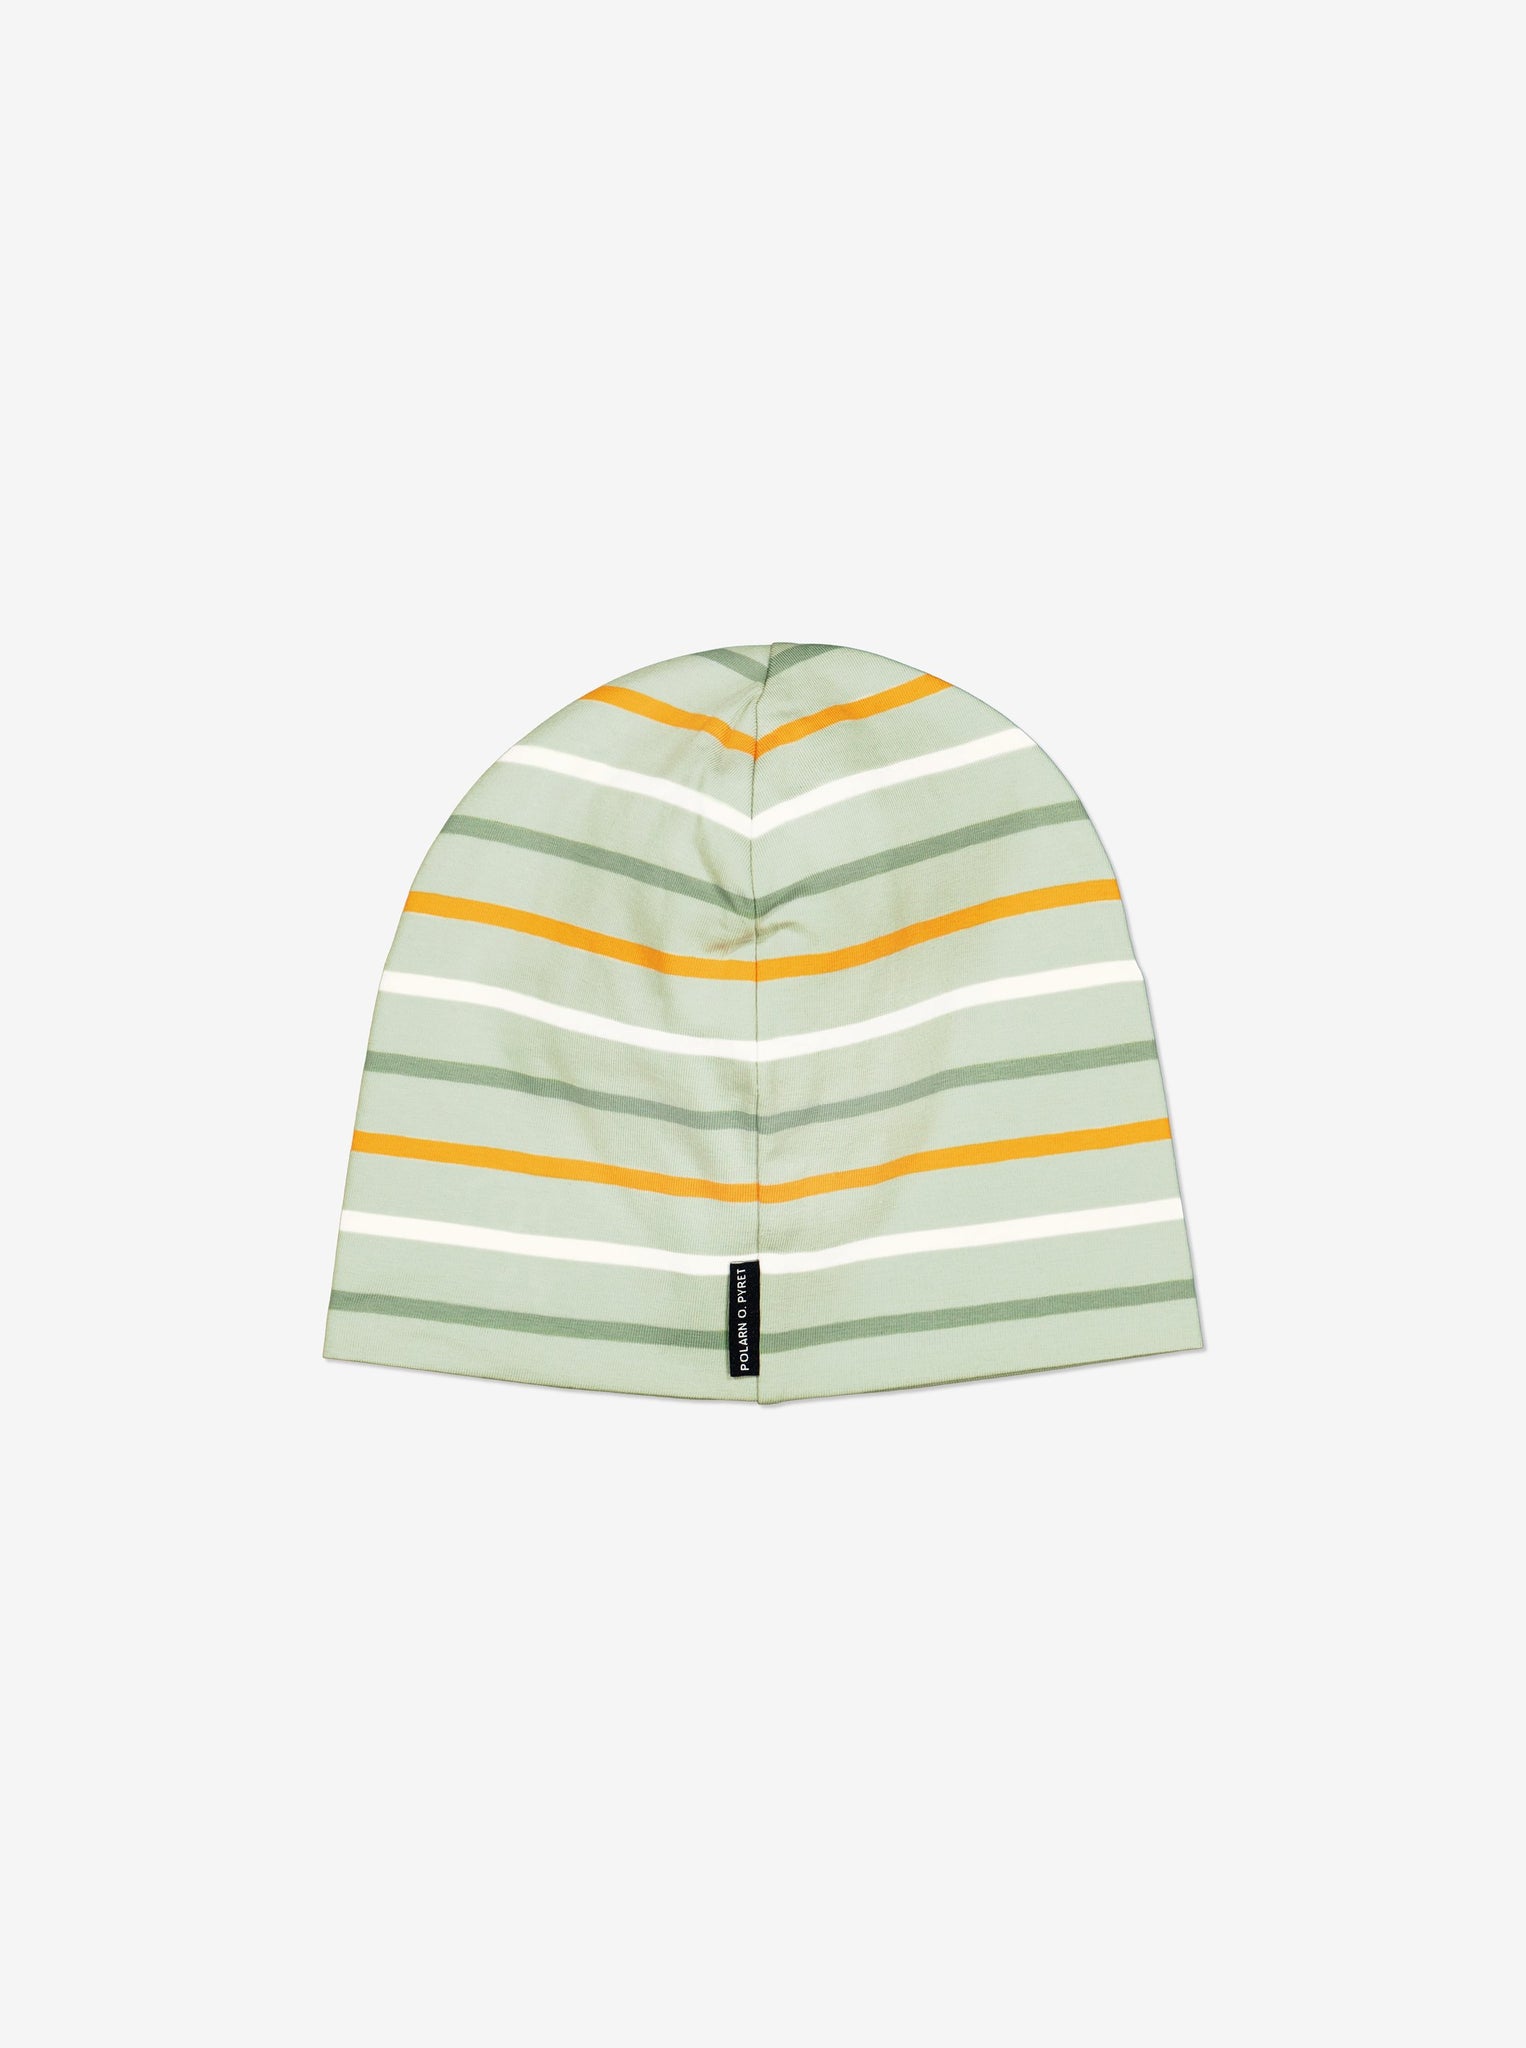 Striped Green Kids Beanie Hat from Polarn O. Pyret Kidswear. Warm kids beanie